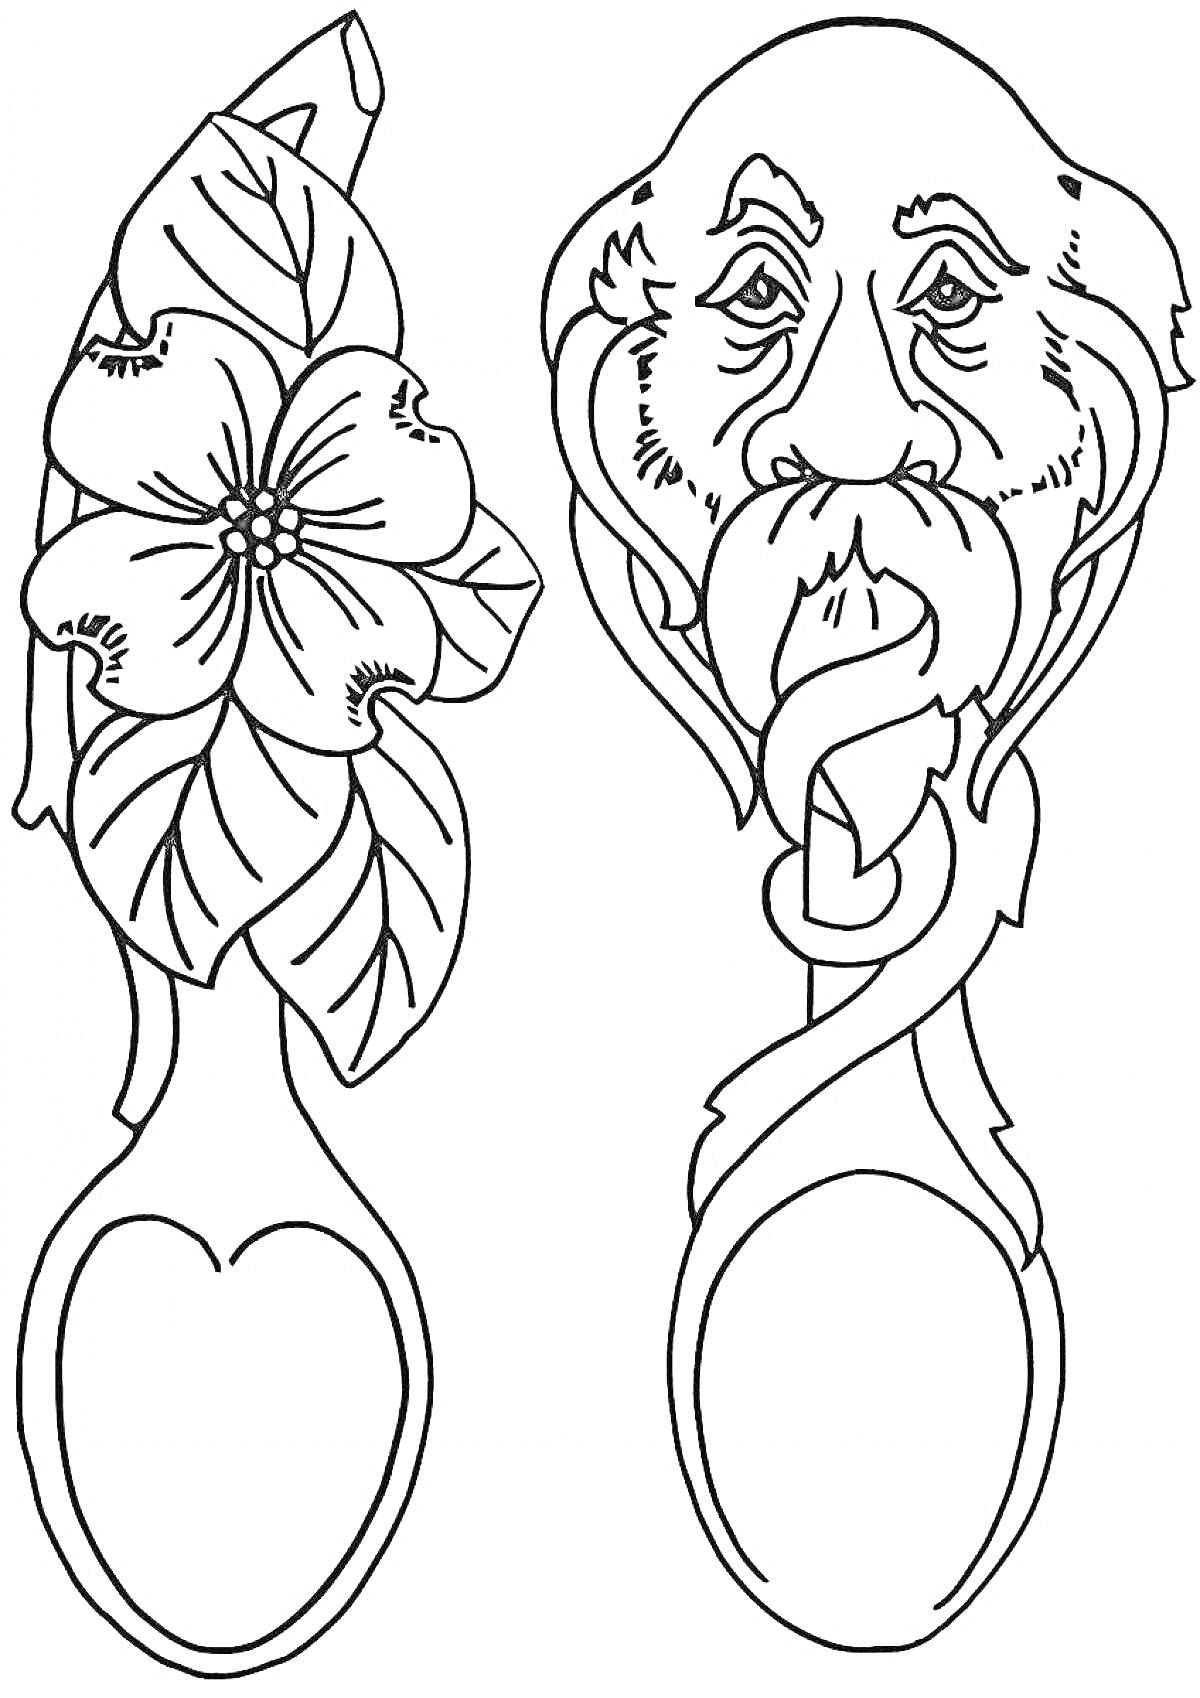 деревянные ложки с цветком и лицом старика